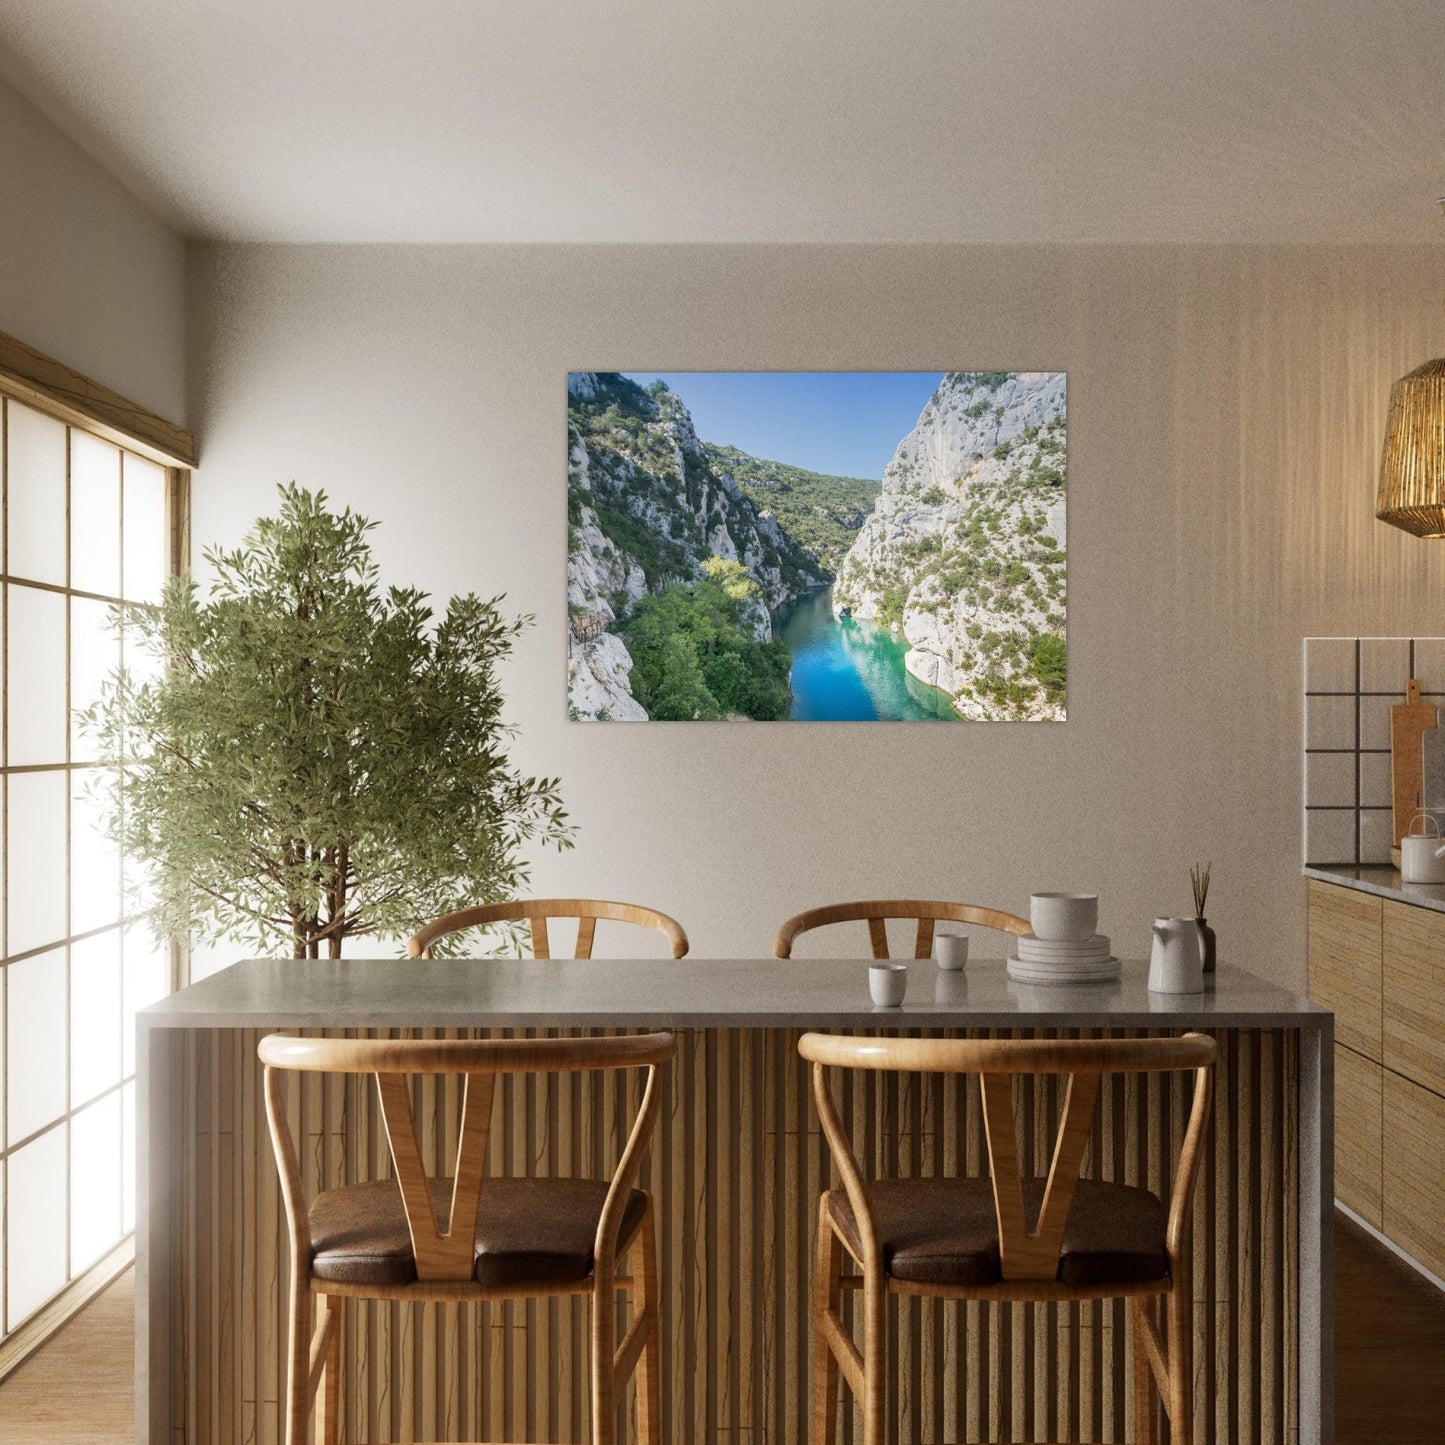 Vente Photo des Gorges du Verdon, Provence - Tableau photo alu montagne